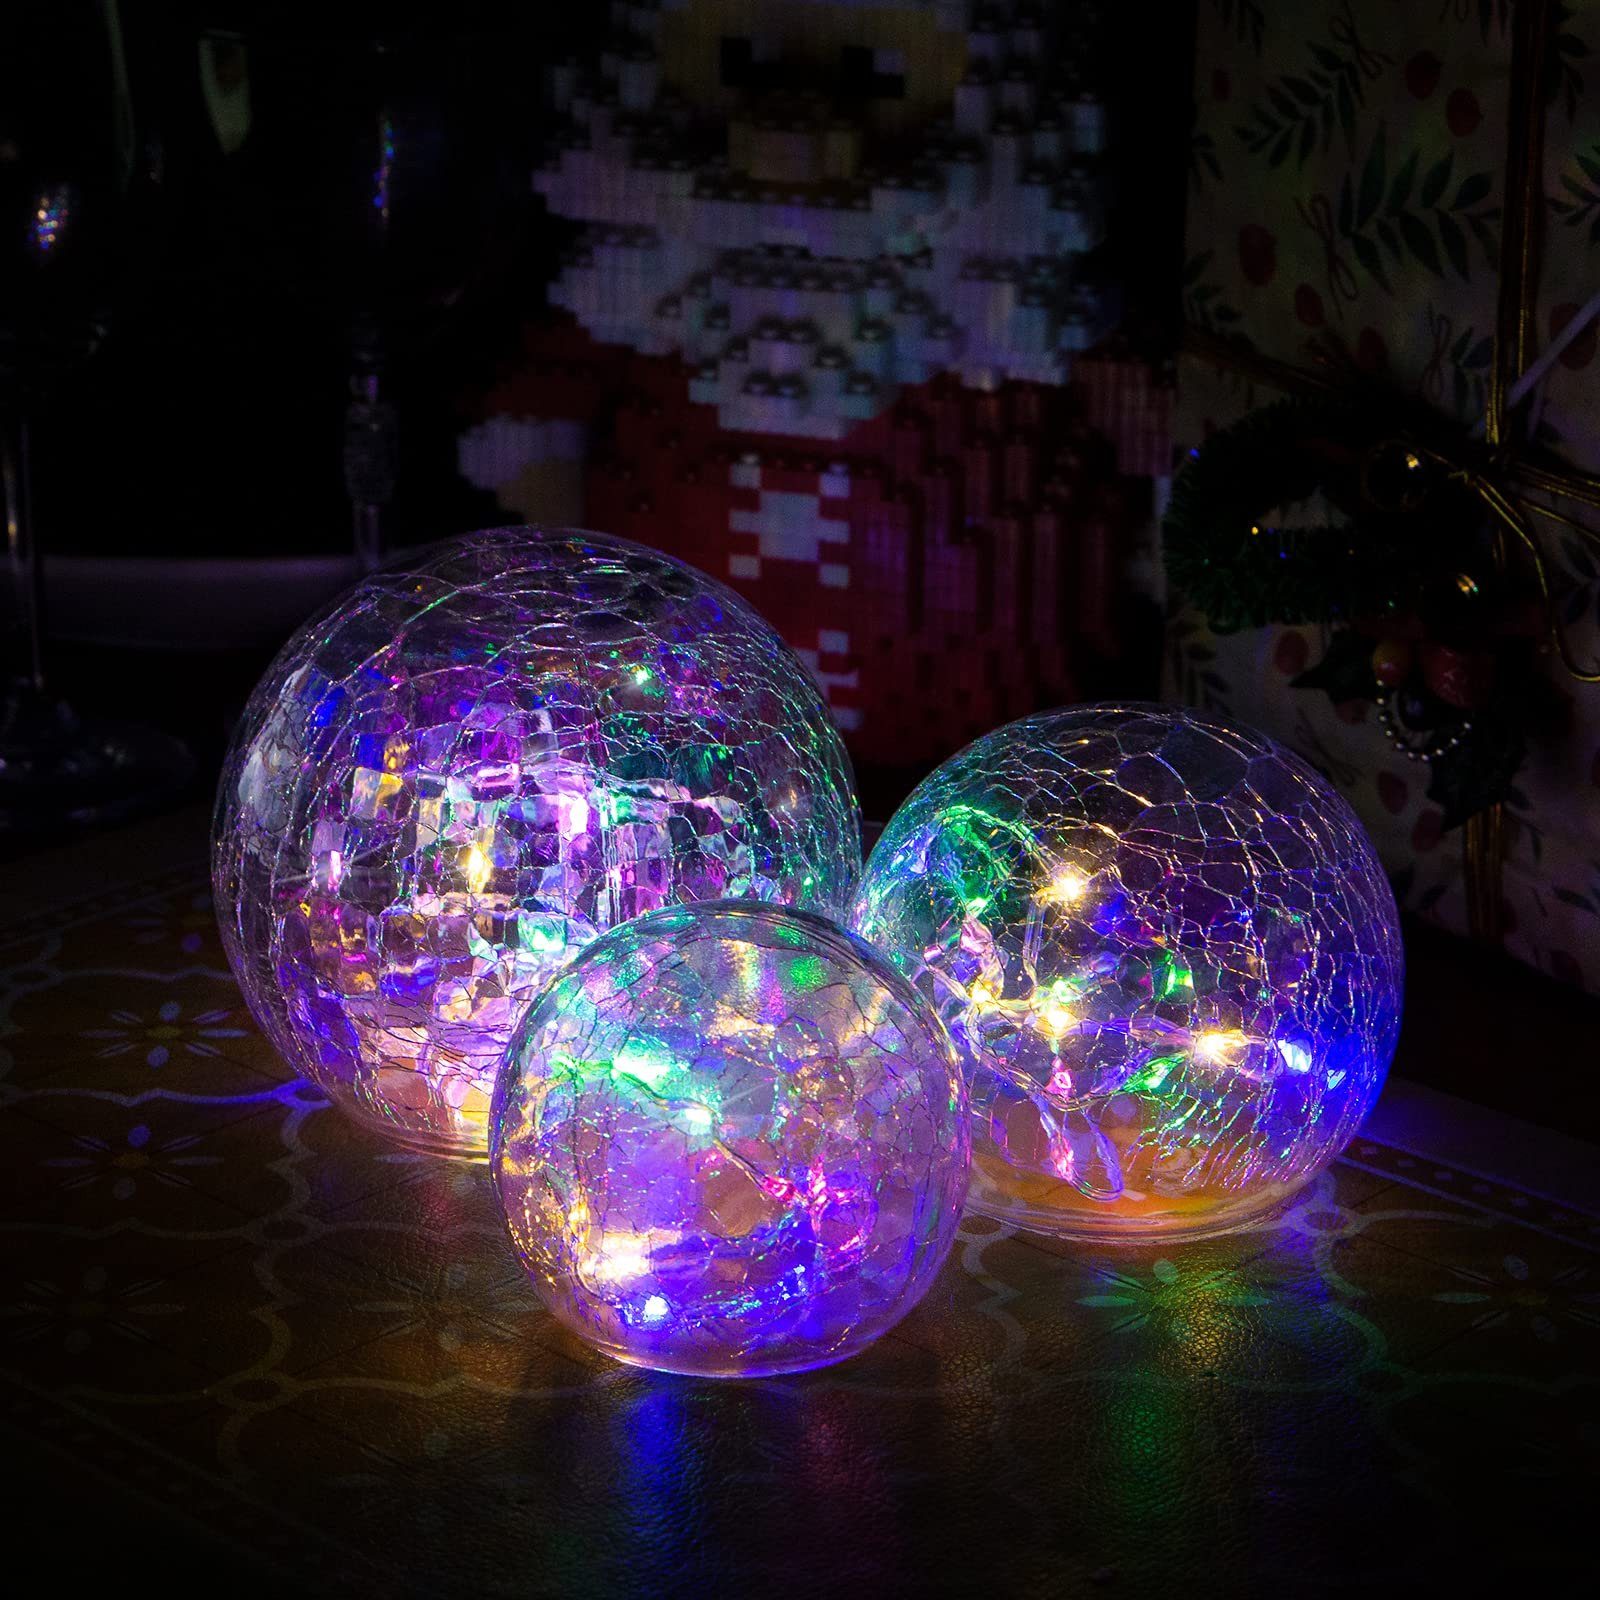 Ciskotu LED-Lichterkette Weihnachtsdeko Beleuchtet mit Crackle Glas,8 Modi Lampe, für Innen/Herbstdeko/Tischdeko/Schlafzimmer/Wohnzimmer[Energieklasse C